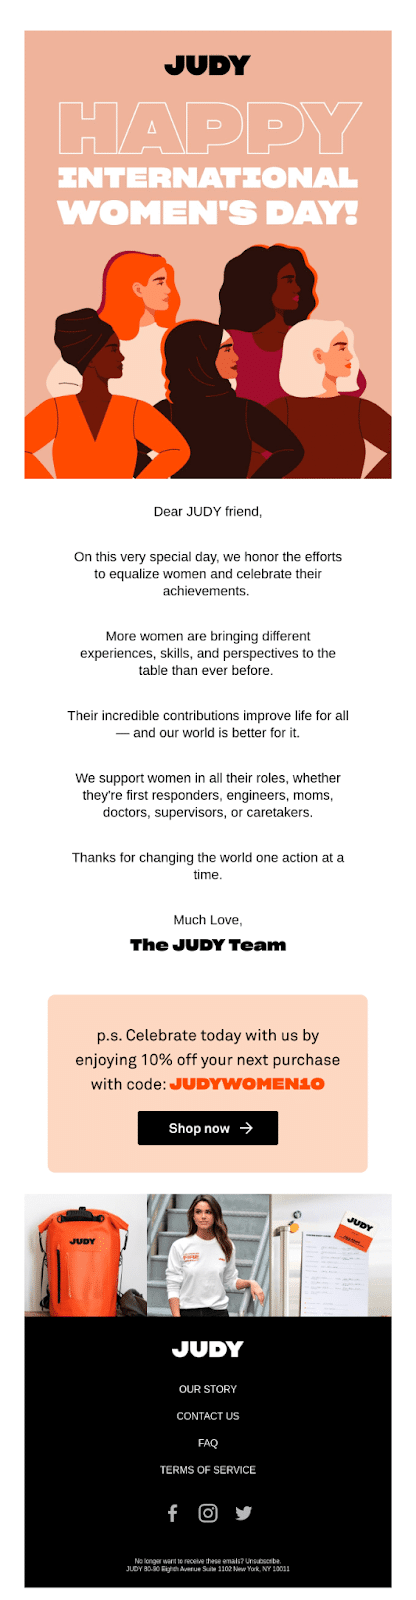 E-mail do Dia Internacional da Mulher da Judy